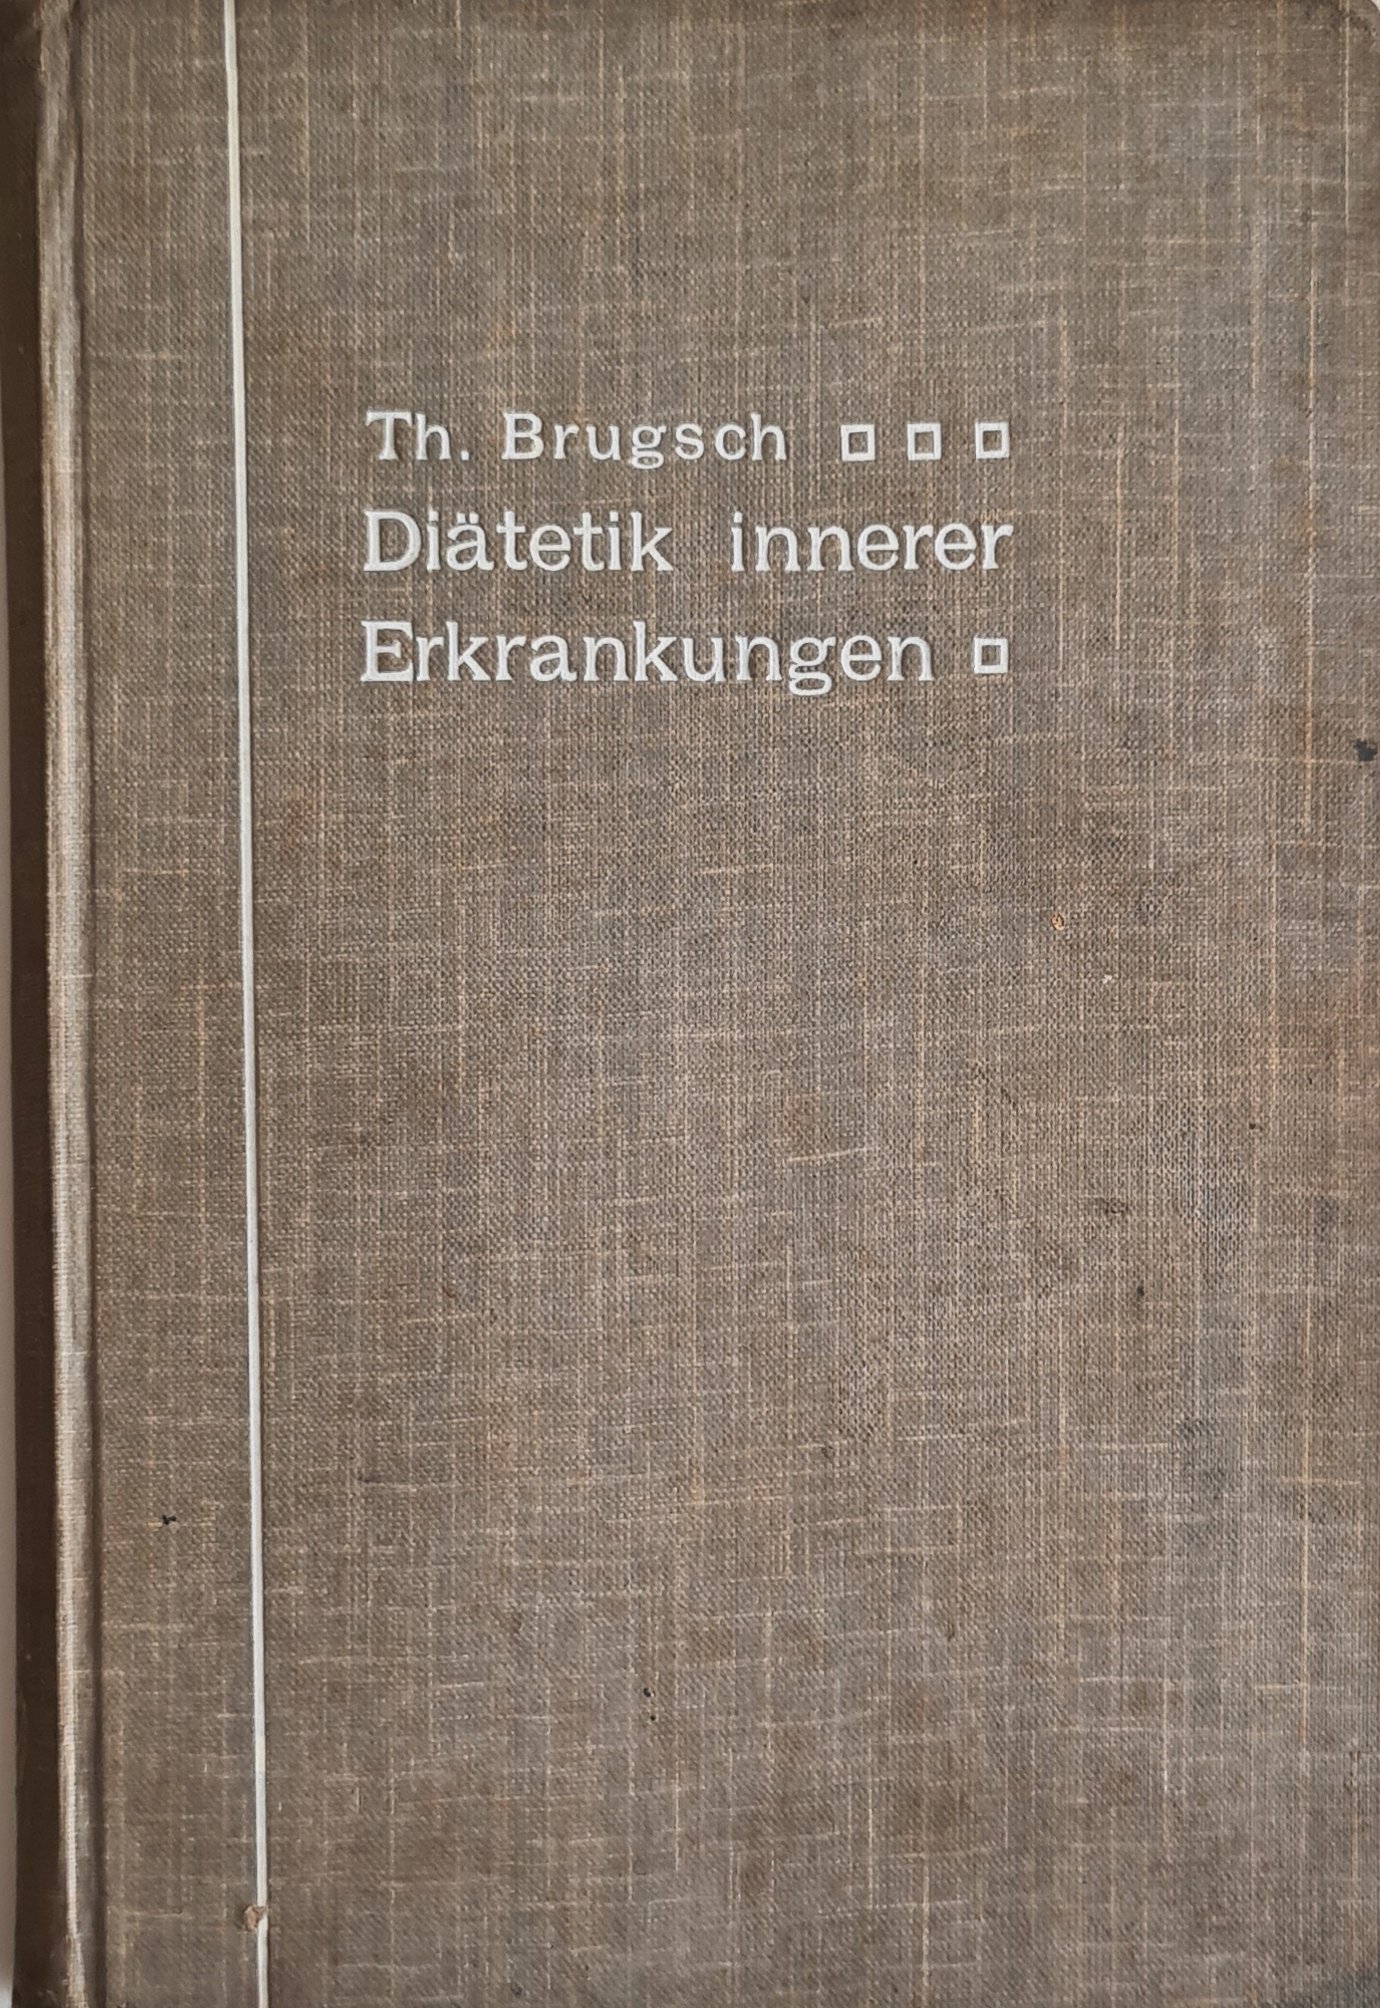 Diätetik innerer Erkrankungen (Krankenhausmuseum Bielefeld e.V. CC BY-NC-SA)